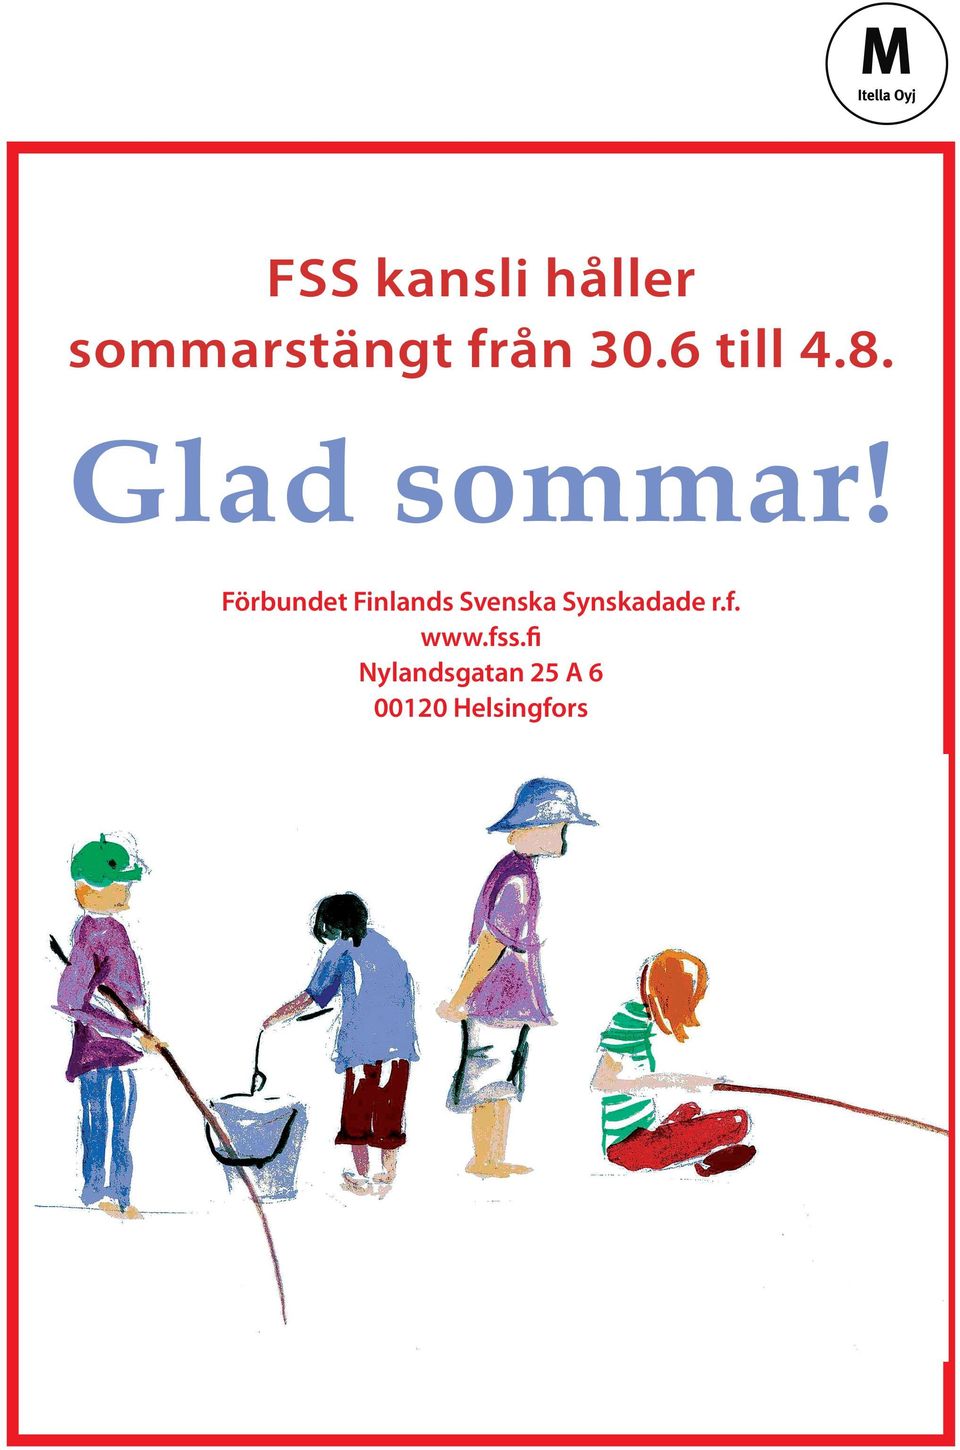 Förbundet Finlands Svenska Synskadade r.